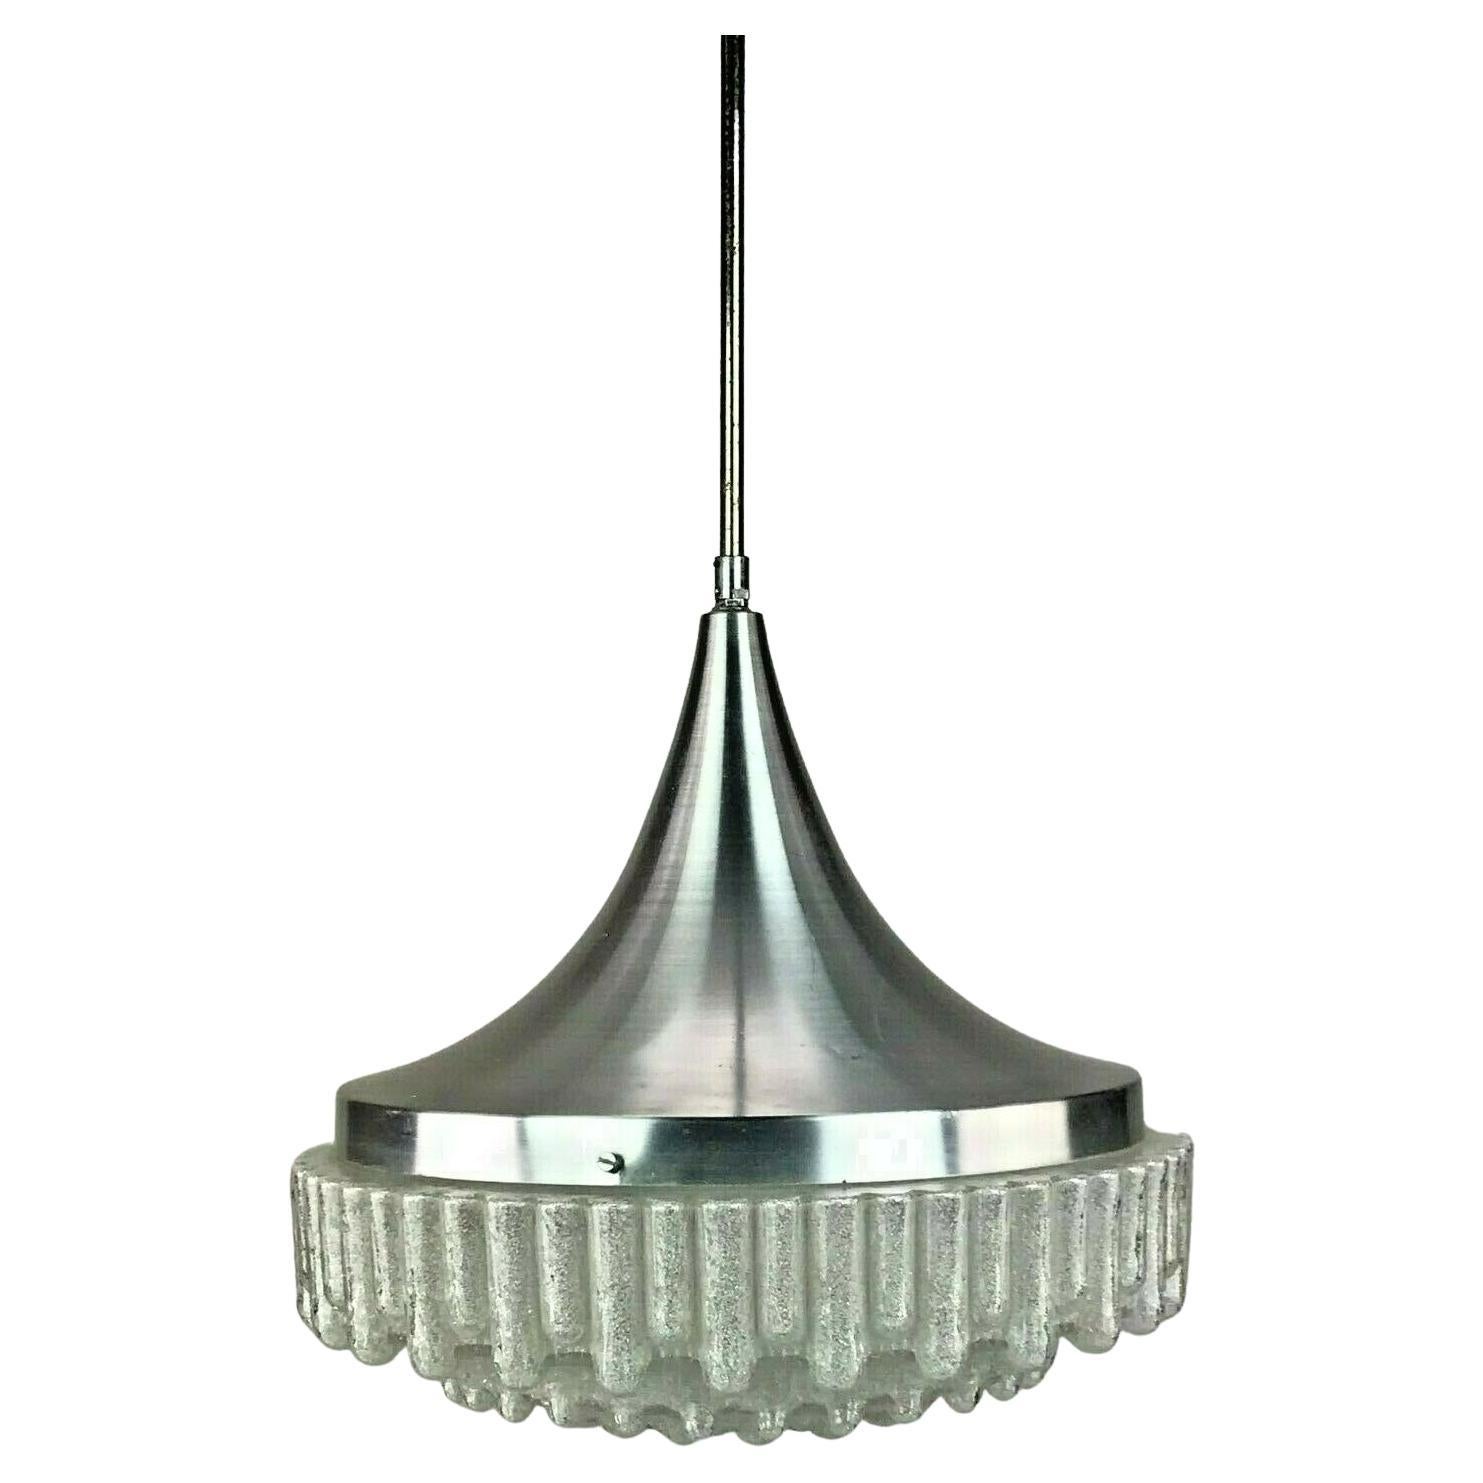 Lampe suspendue des années 60 et 70 Lampe à boules Lampe en verre chromé bullé Design de l'ère spatiale